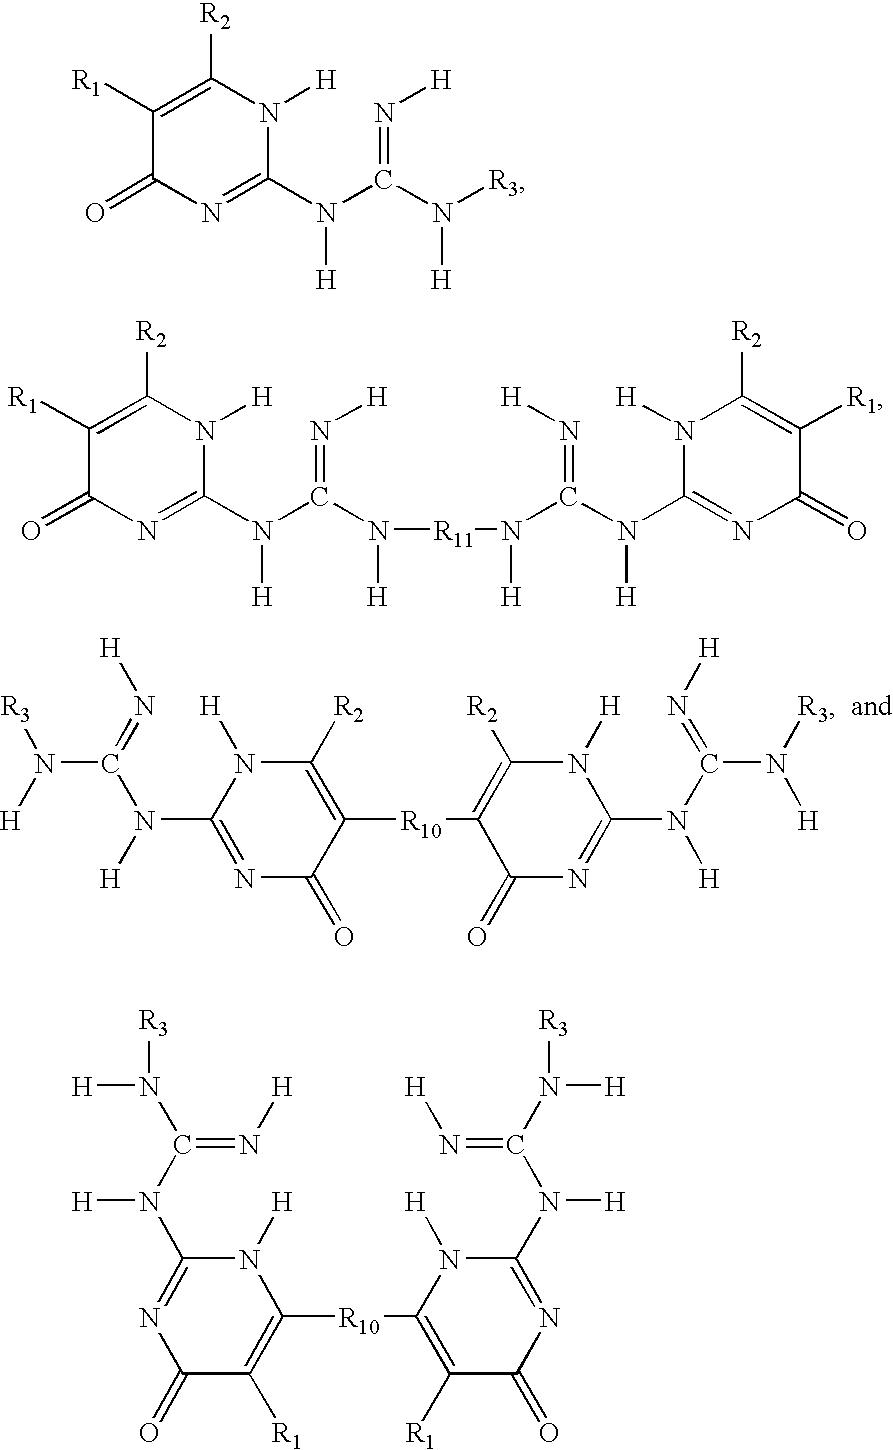 Phase change inks containing gelator additives